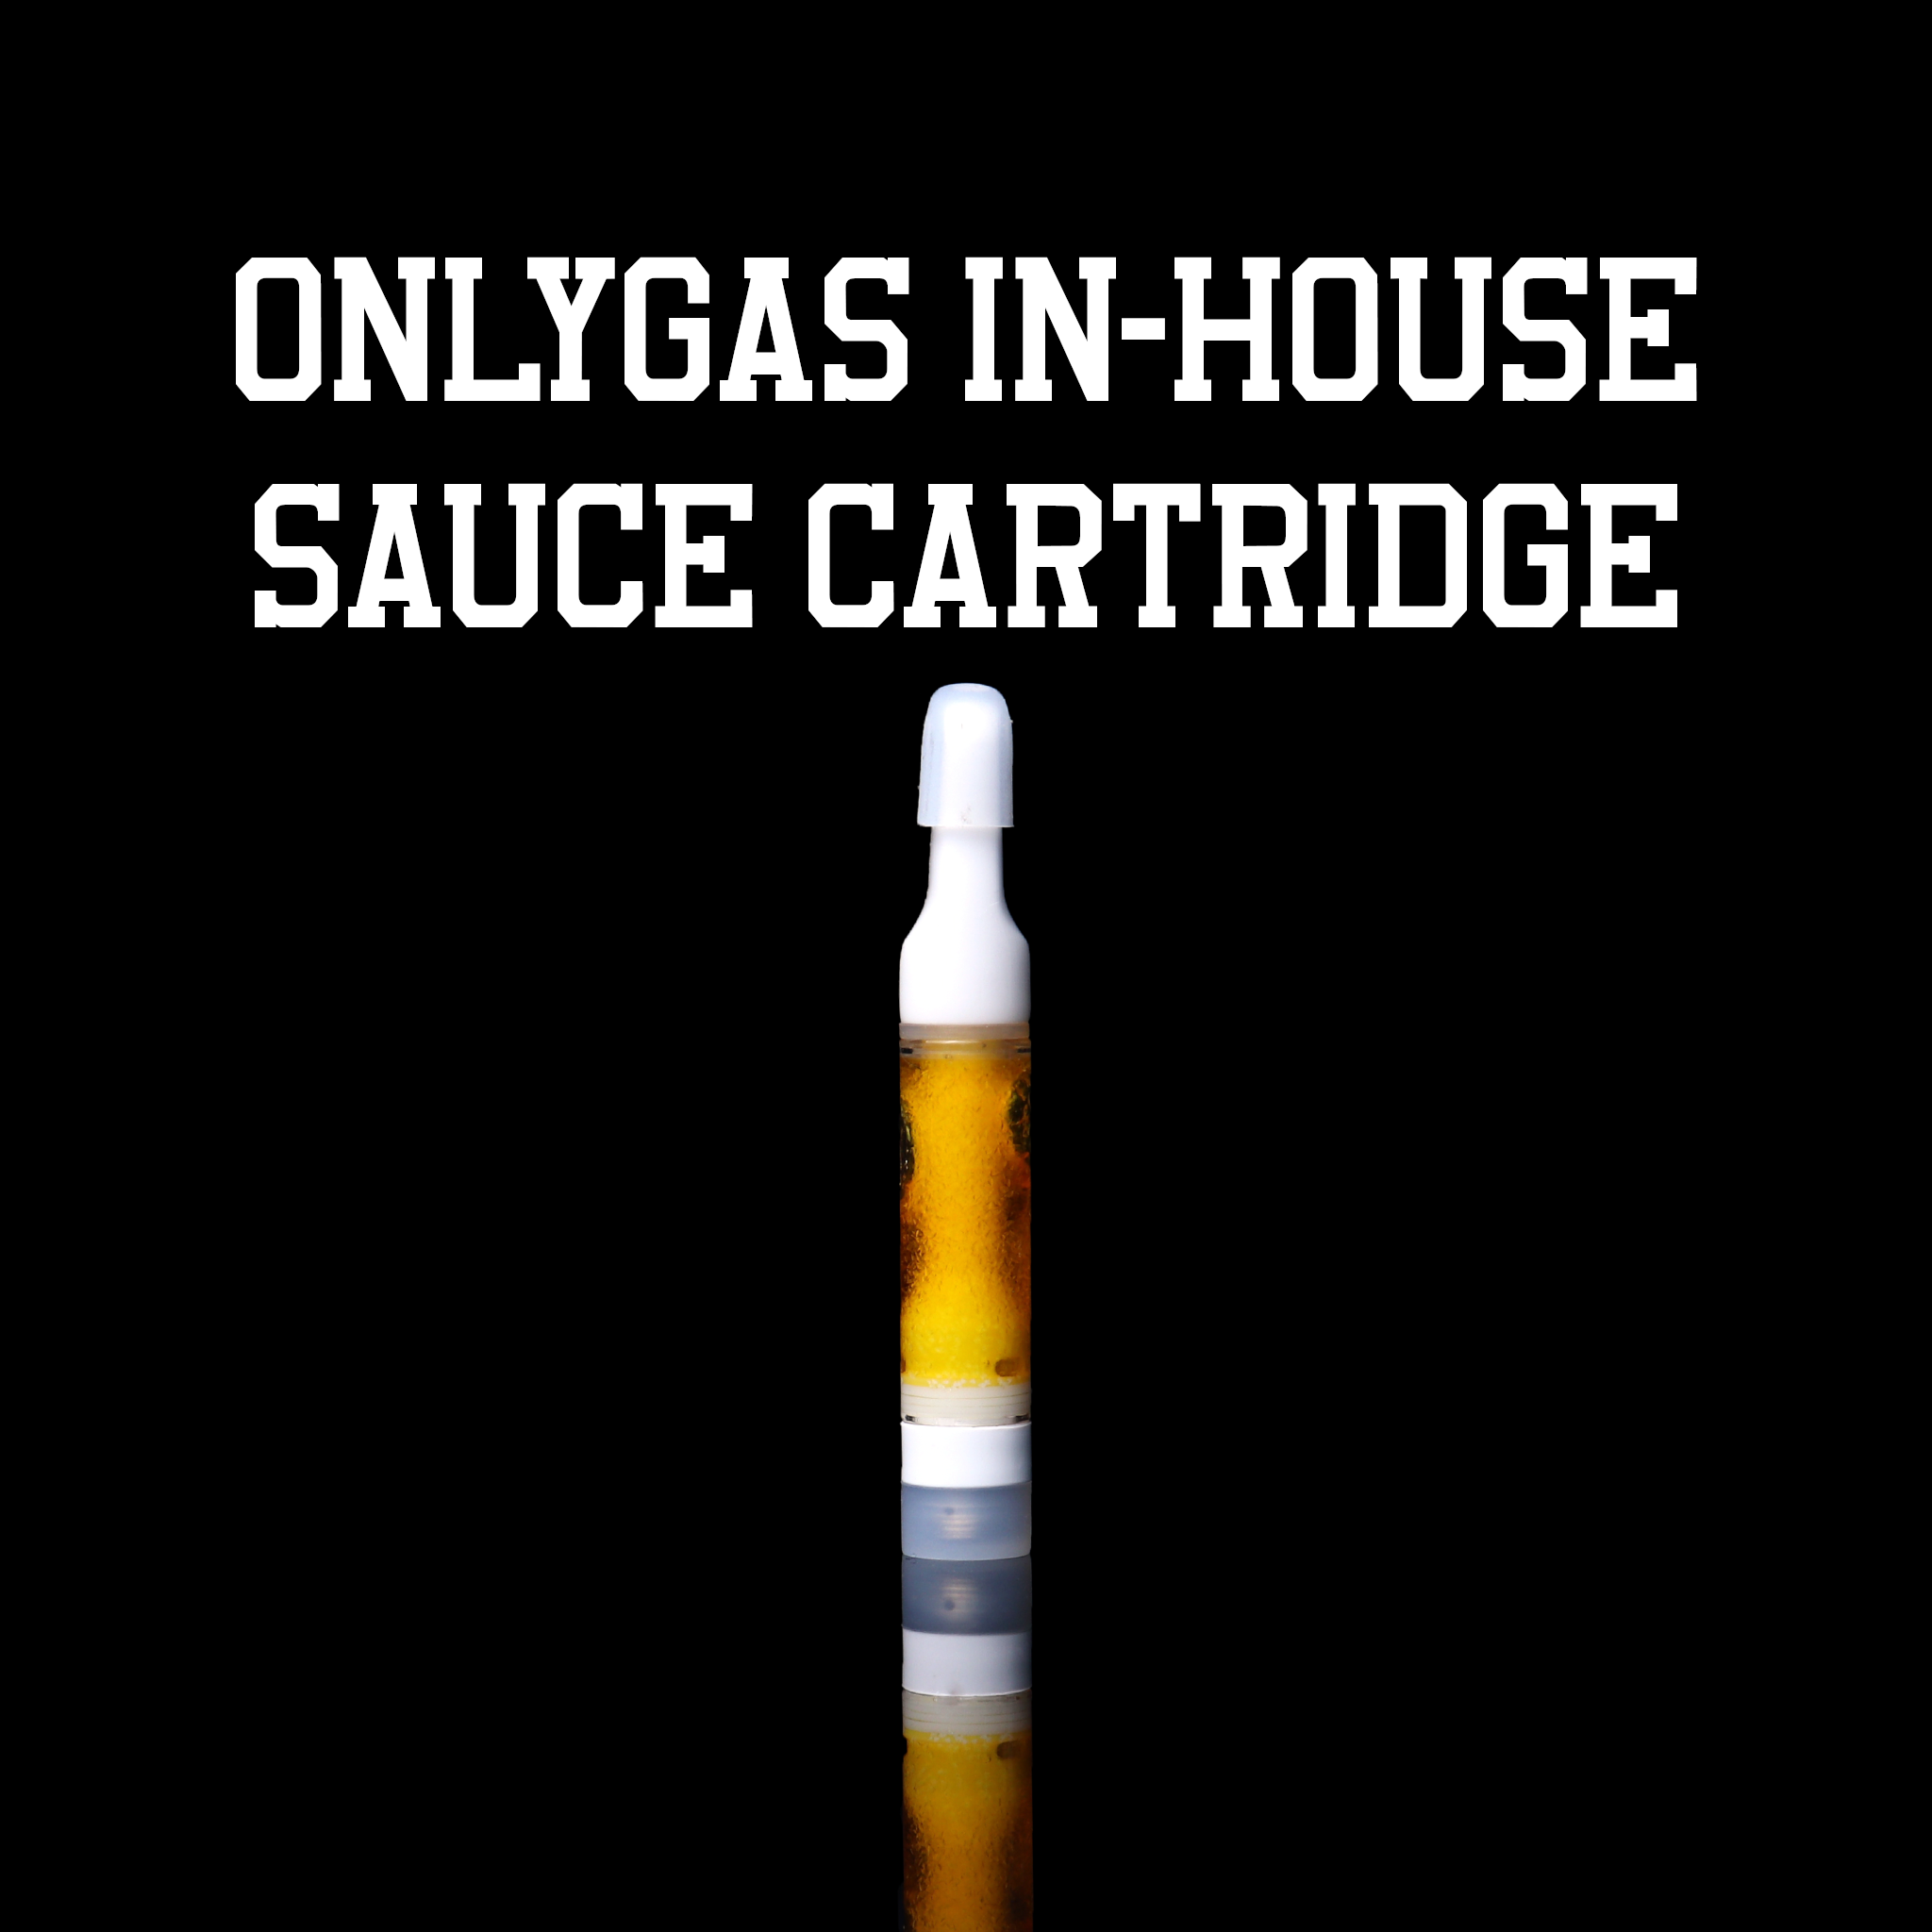 OG in-house sauce cart